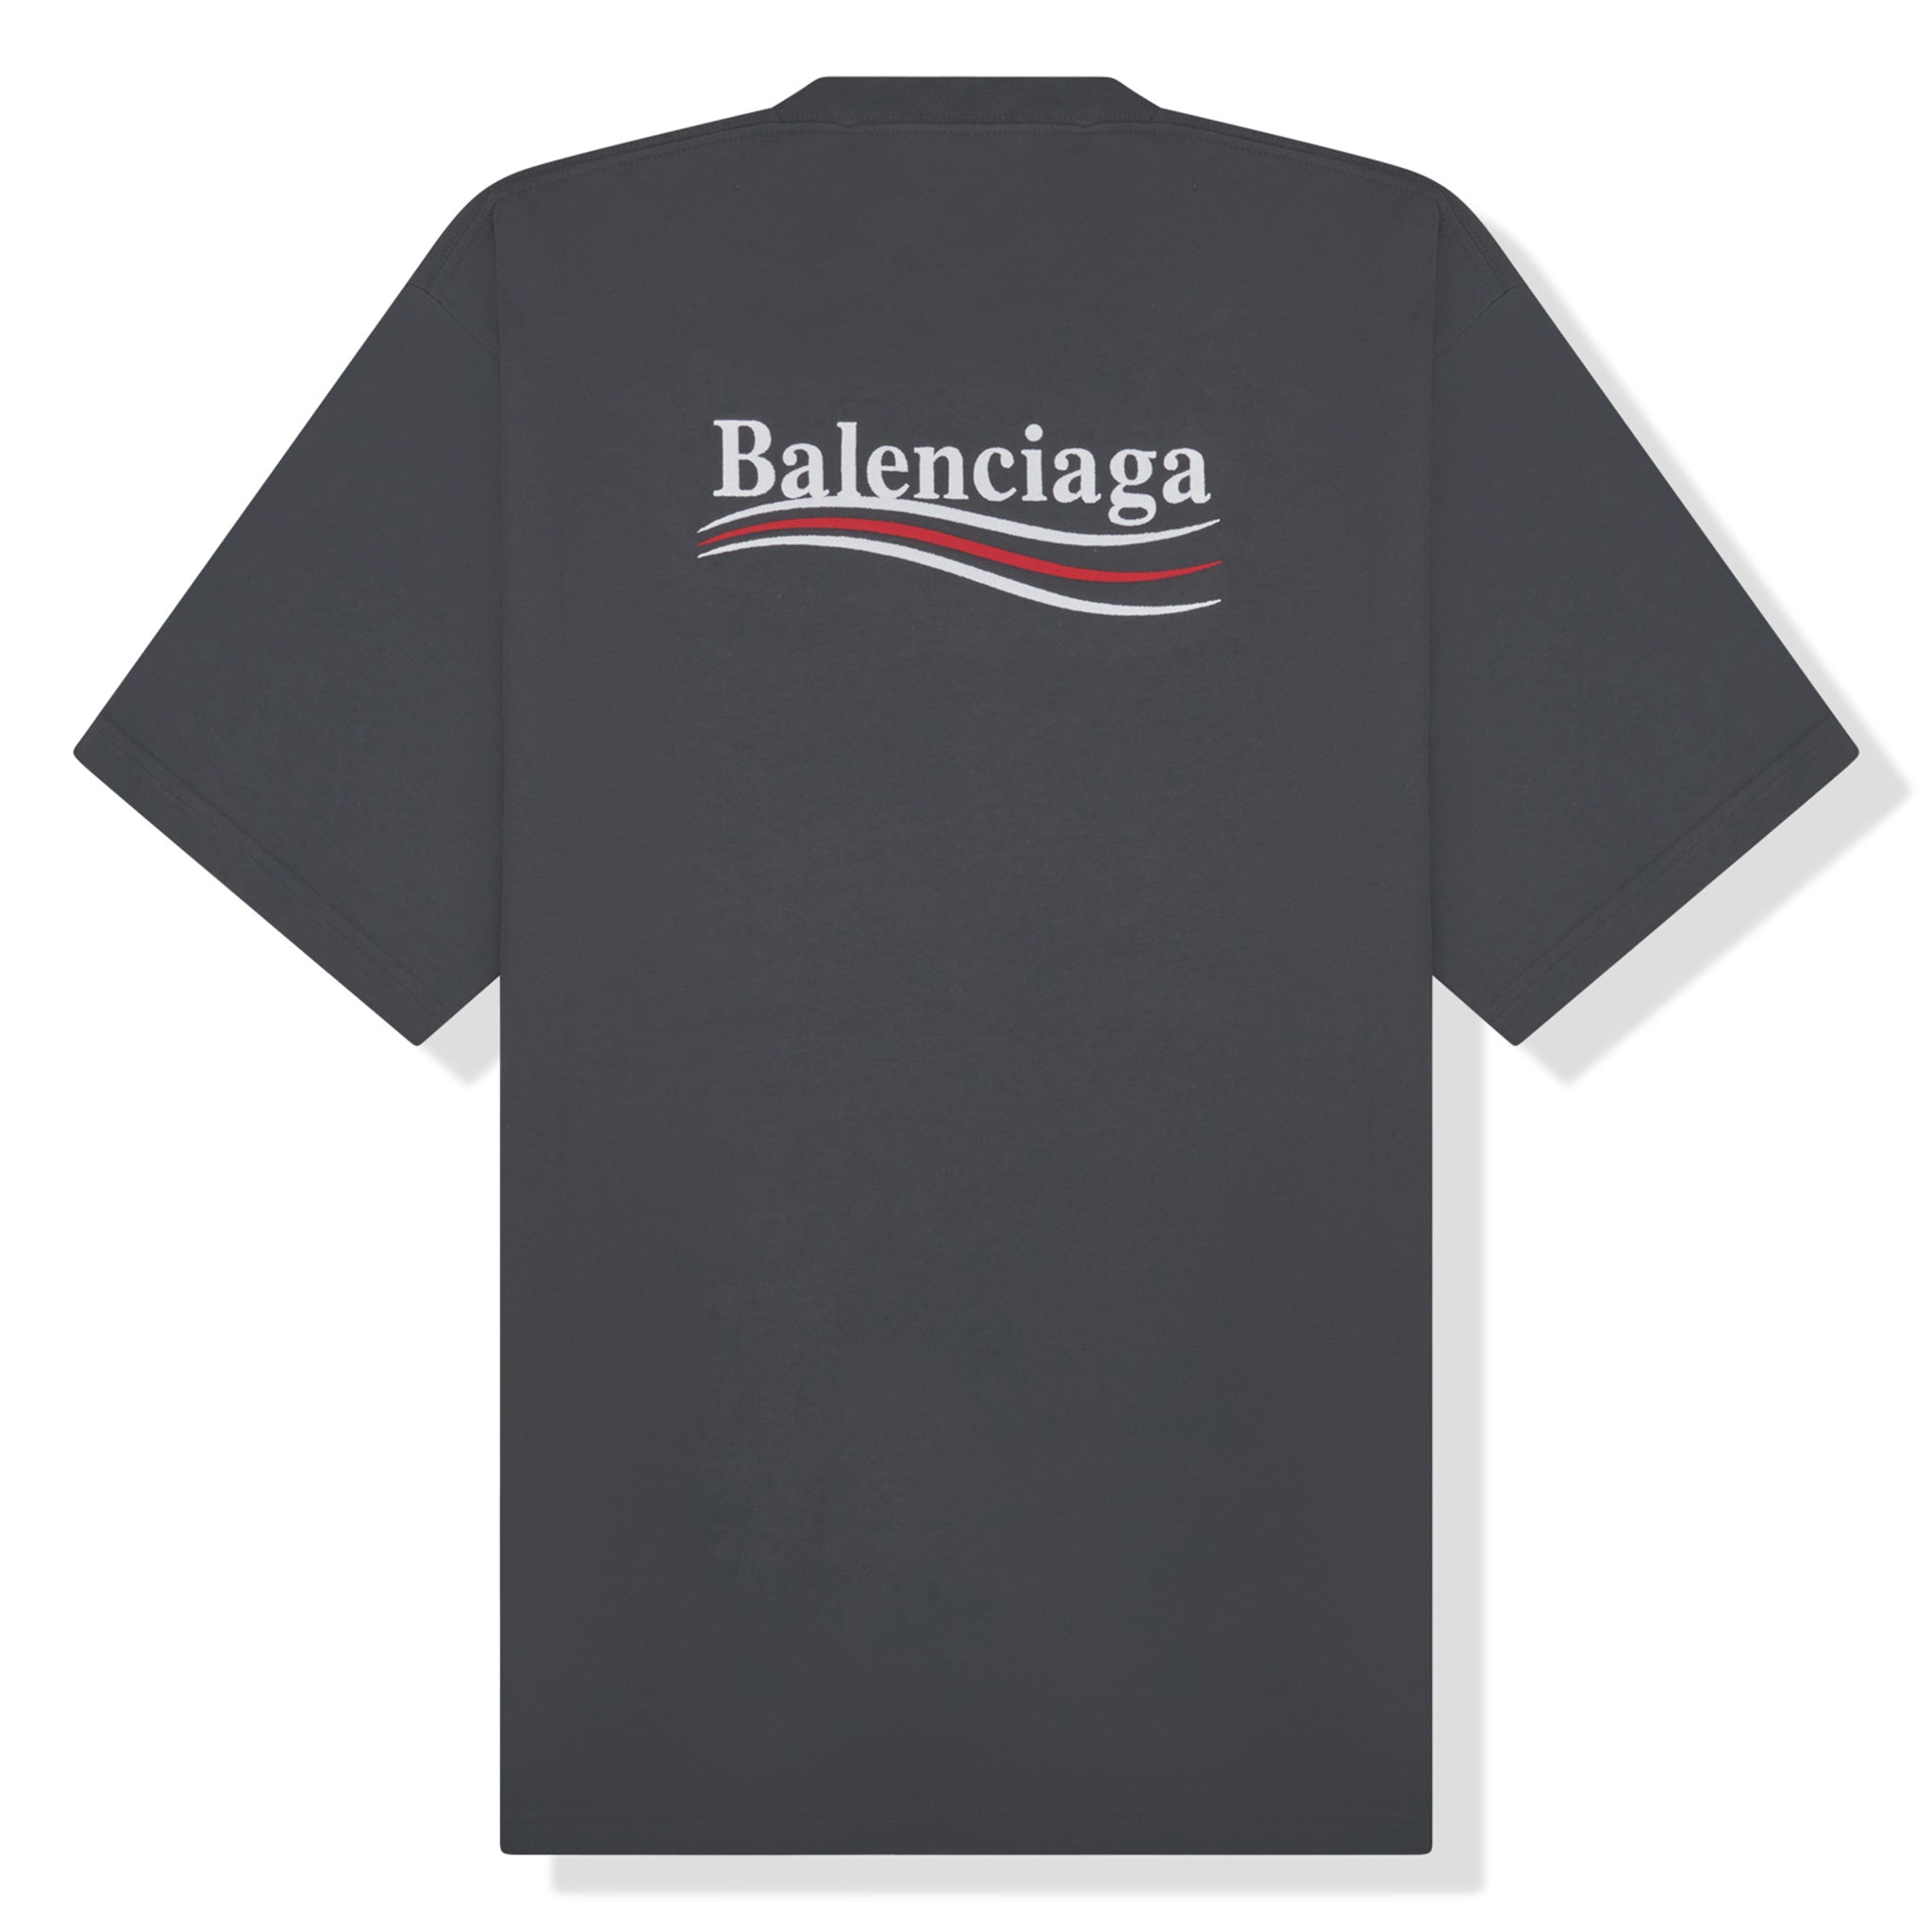 Balenciaga Political Campaign Hoodie Large Fit - Black - Men's - L - Cotton